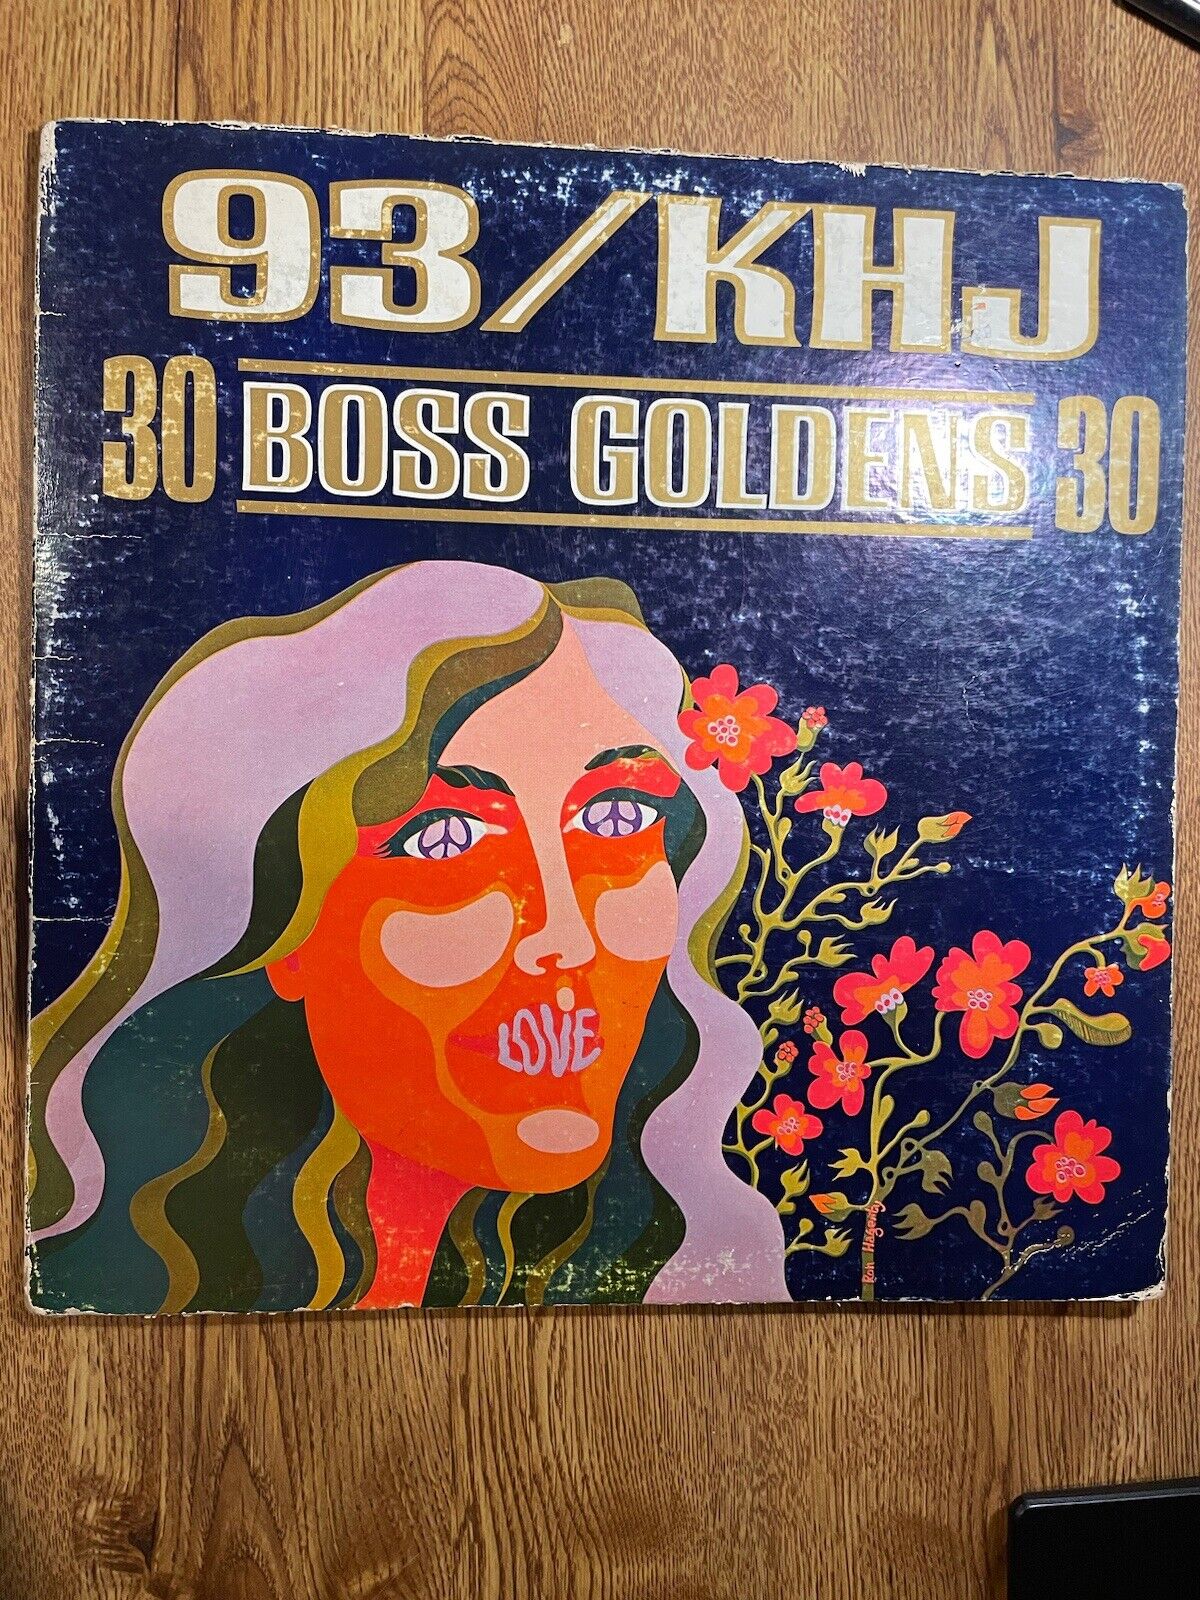 93/khj 30boss Goldens 30